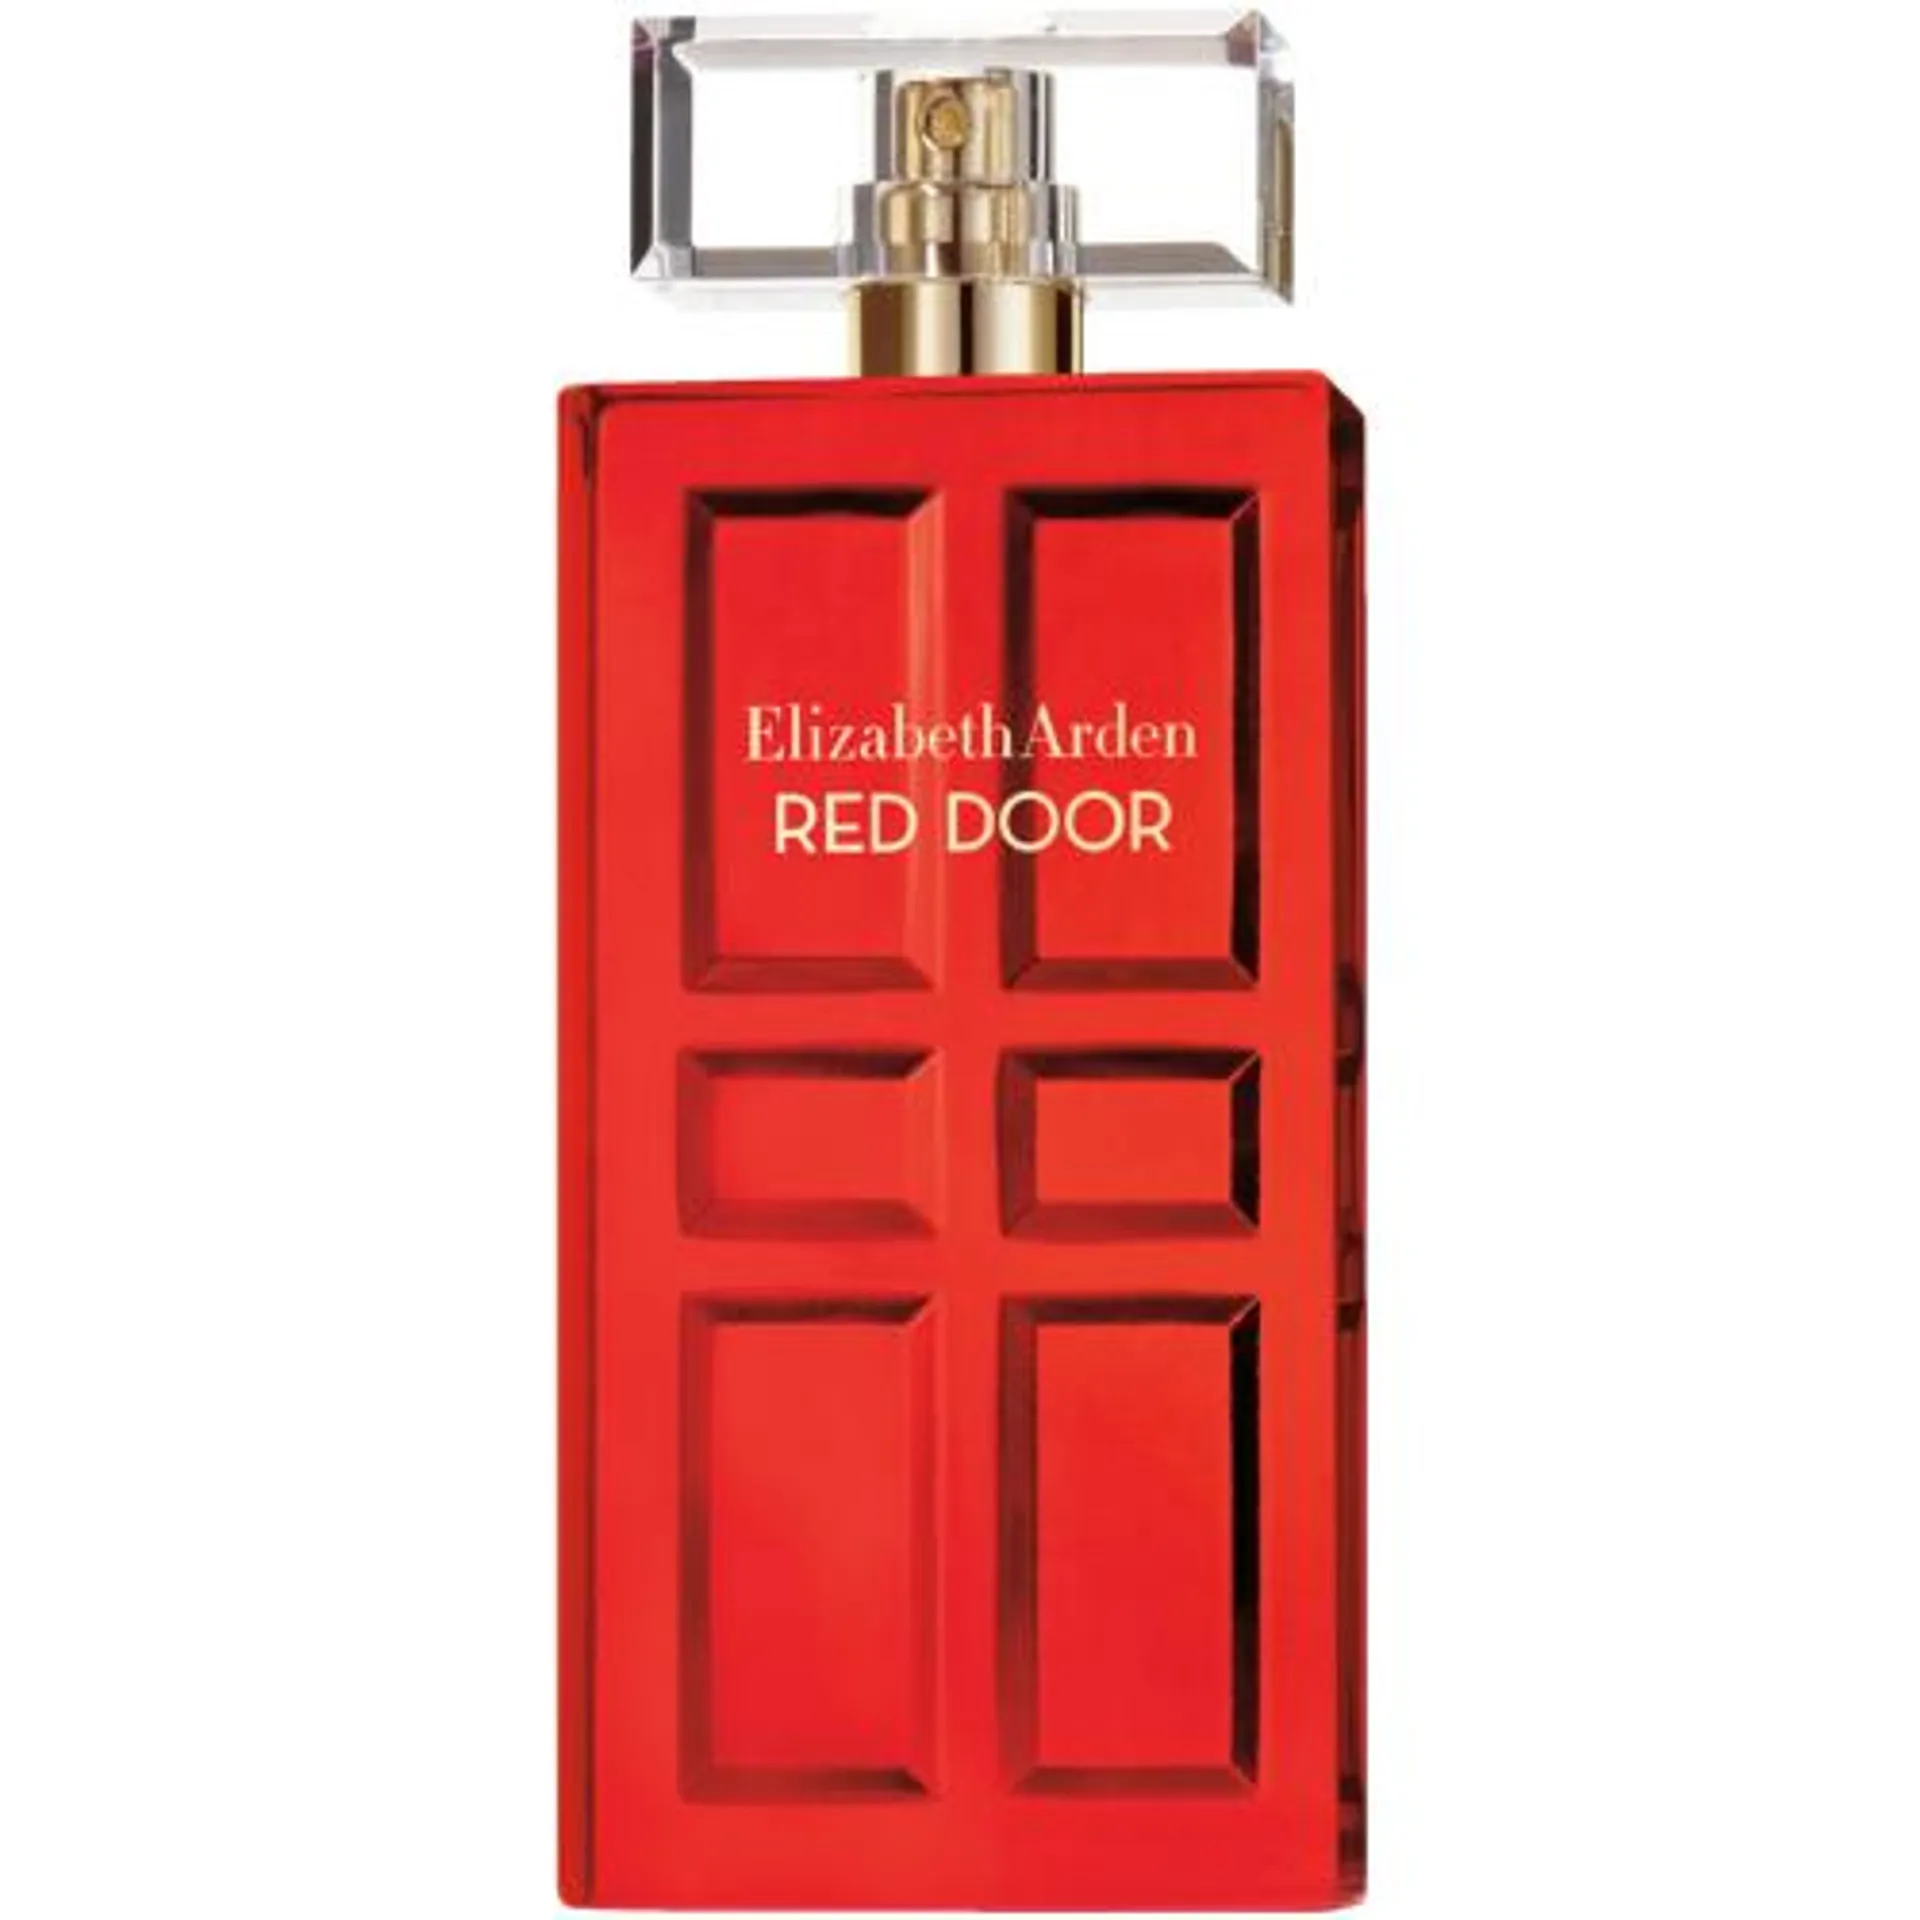 Red Door Eau De Toilette Spray 50ml